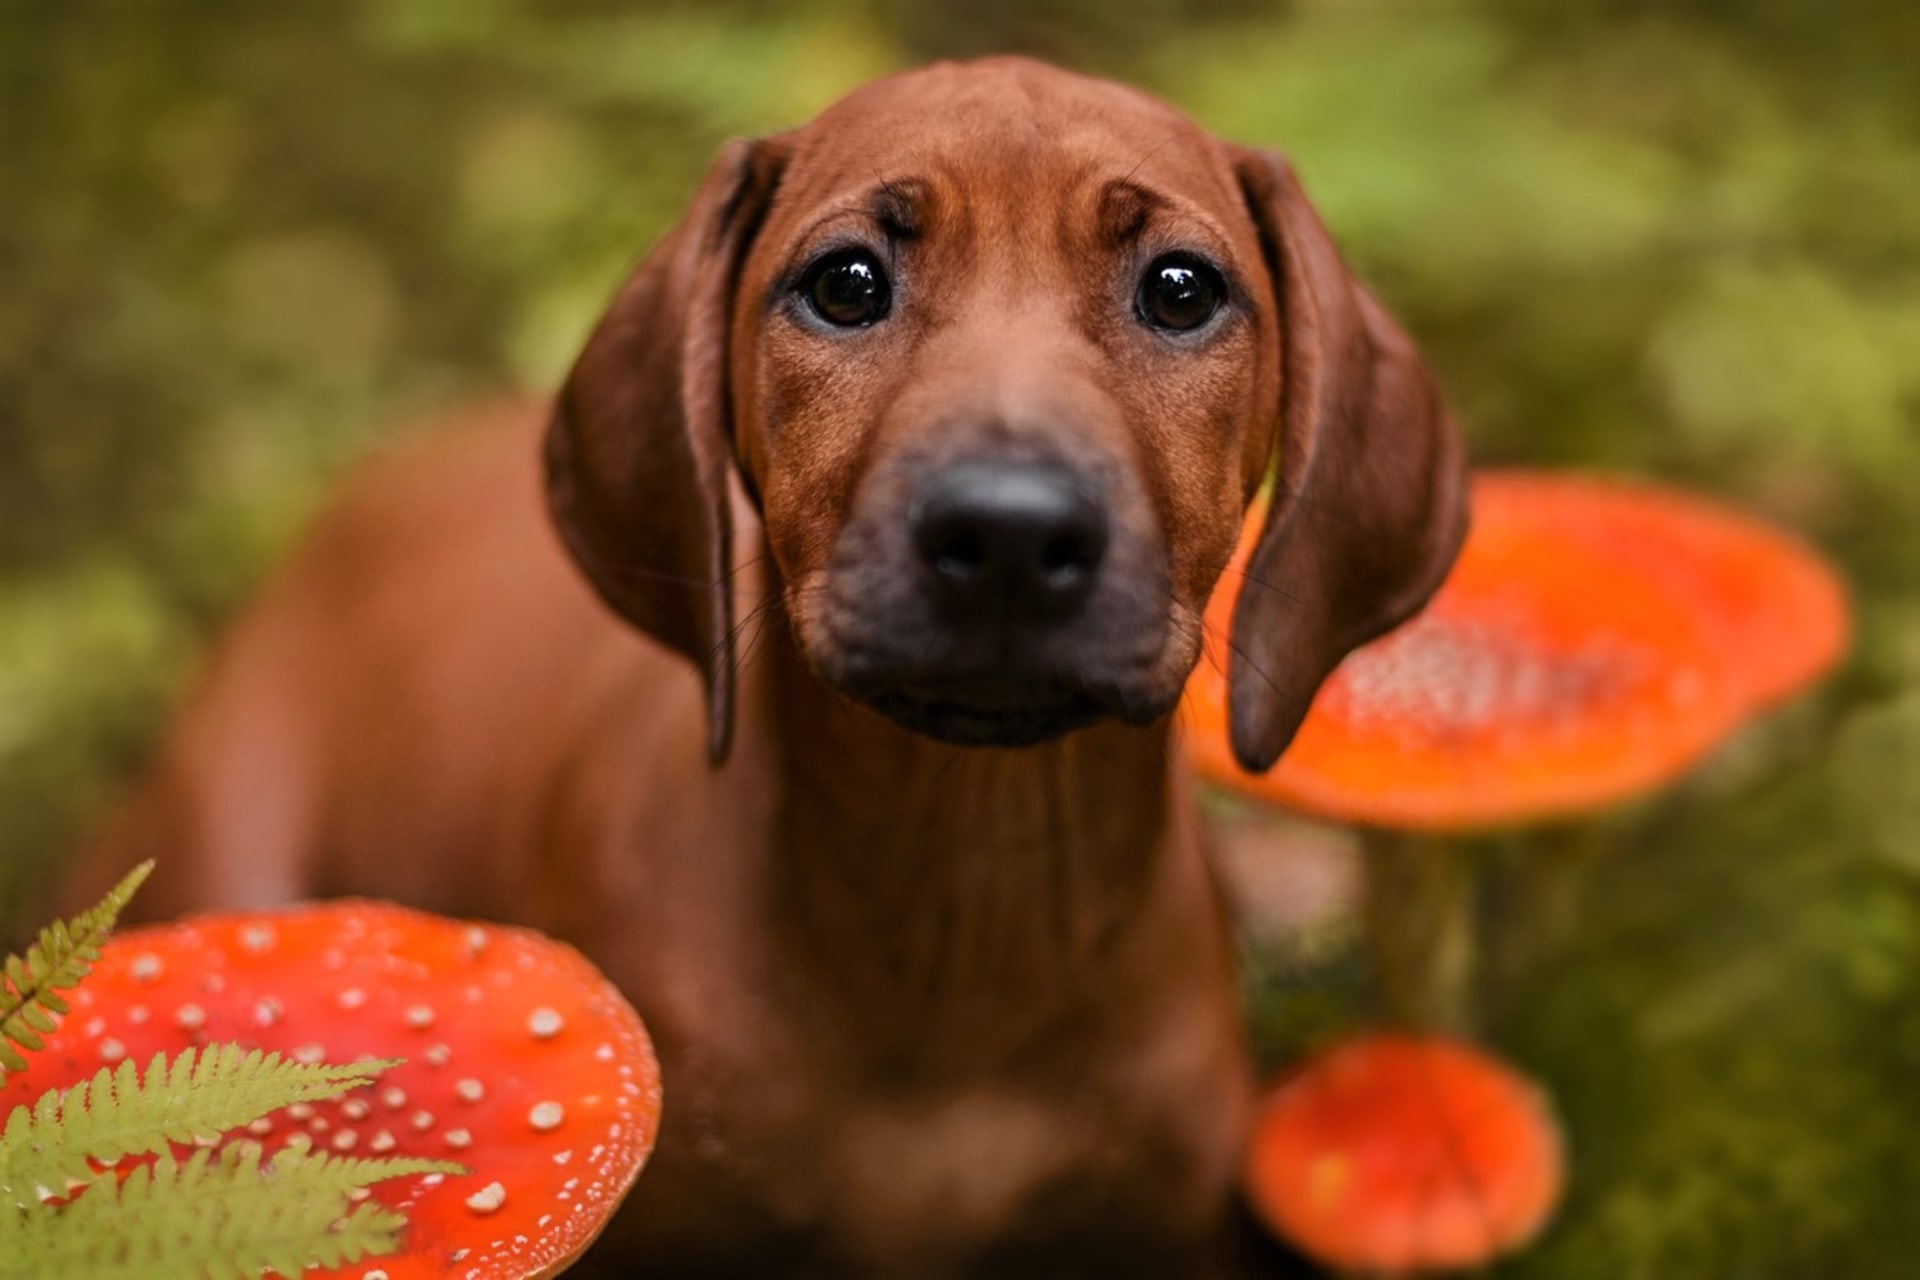 Pokud pes sežere houbu jedovatou, ihned informujme veterináře, o jaký druh se jedná. Ovšem pro některé psy mohou být i syrové jedlé houby špatně stravitelné a způsobit zvracení či průjem anebo obojí.